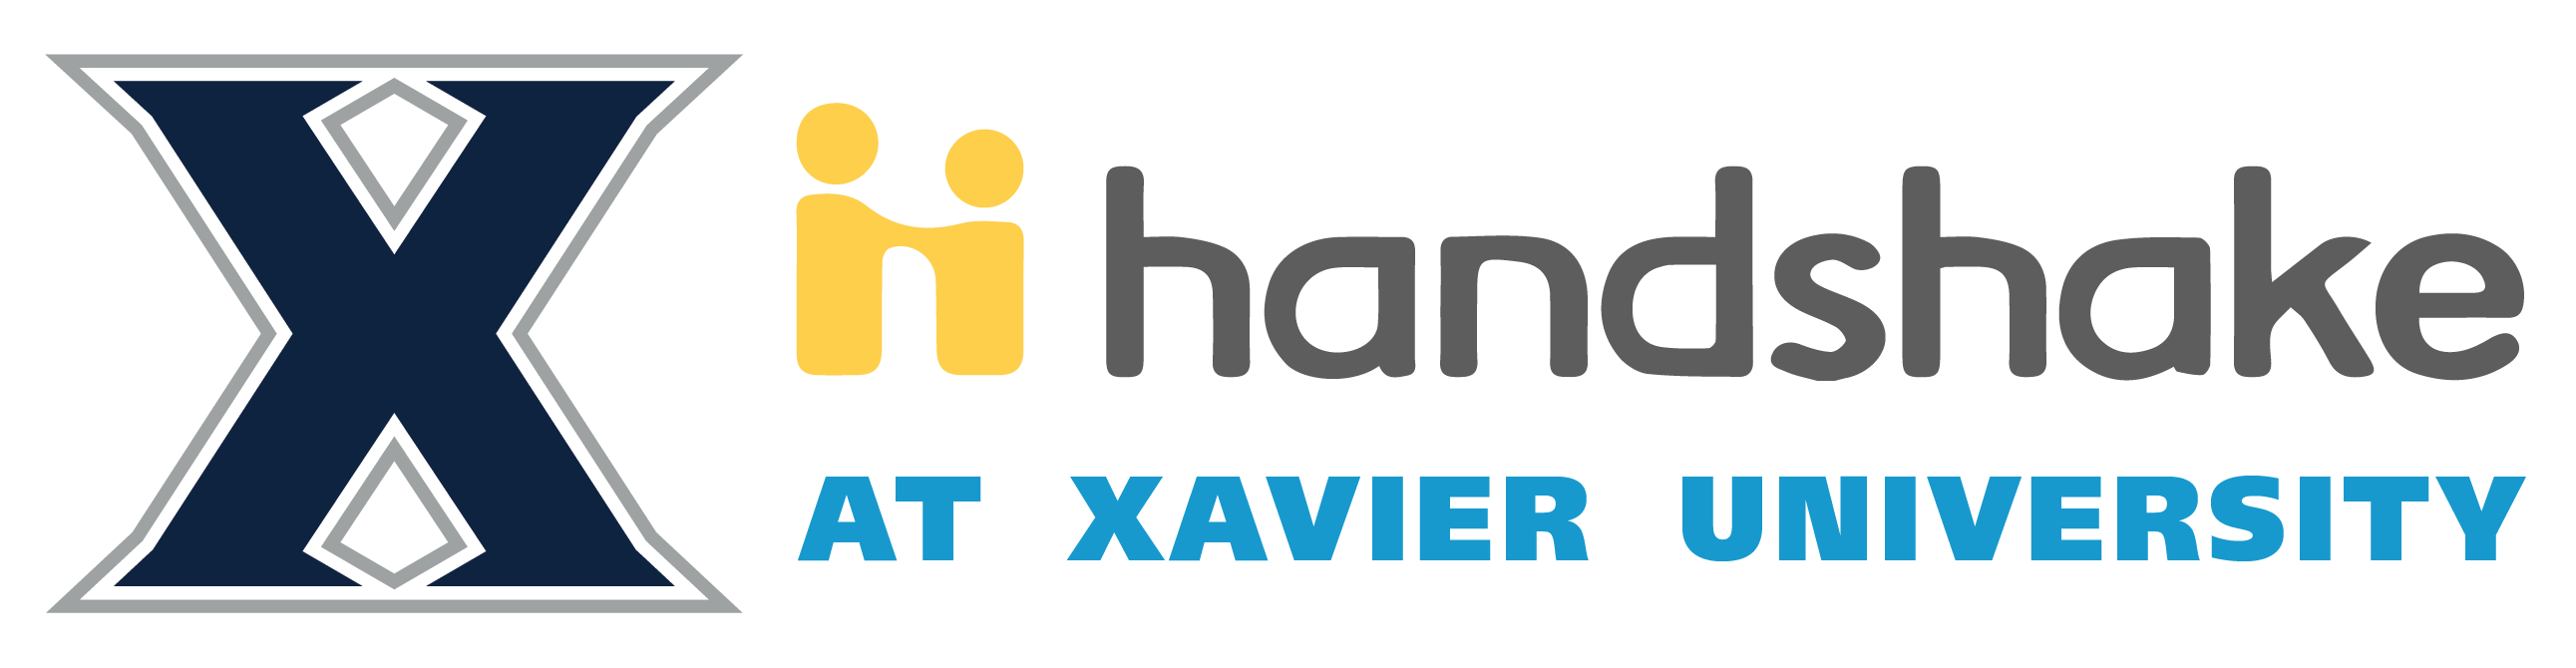 Xavier Handshake logo